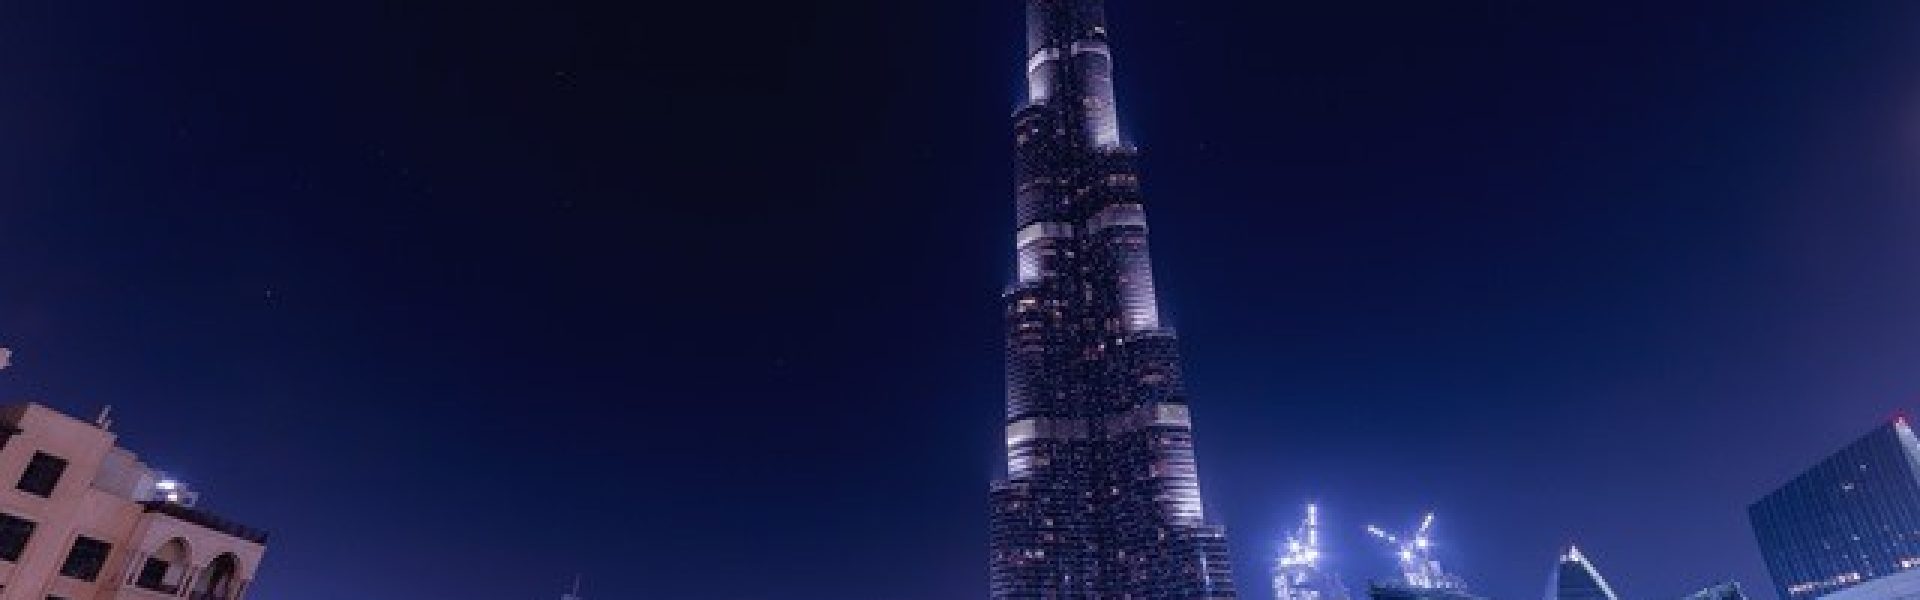 Dubai-Urlaubsreisen-Urlaubsangebote-burj-khalifa Das Bild zeigt das beeindruckende Wahrzeichen von Dubai, den Burj Khalifa, der majestätisch in den Himmel ragt. Dubai, bekannt für seinen Luxus und seine modernen Architektur, bietet eine Fülle von Urlaubsreisen und erstklassigen Urlaubsangeboten. Ein Besuch des Burj Khalifa, dem höchsten Gebäude der Welt, ermöglicht atemberaubende Ausblicke auf die Stadt und die umliegende Wüstenlandschaft. Dubai bietet seinen Besuchern eine Kombination aus Kultur, Luxus, Einkaufsmöglichkeiten und Unterhaltung, die einen unvergesslichen Urlaub verspricht.